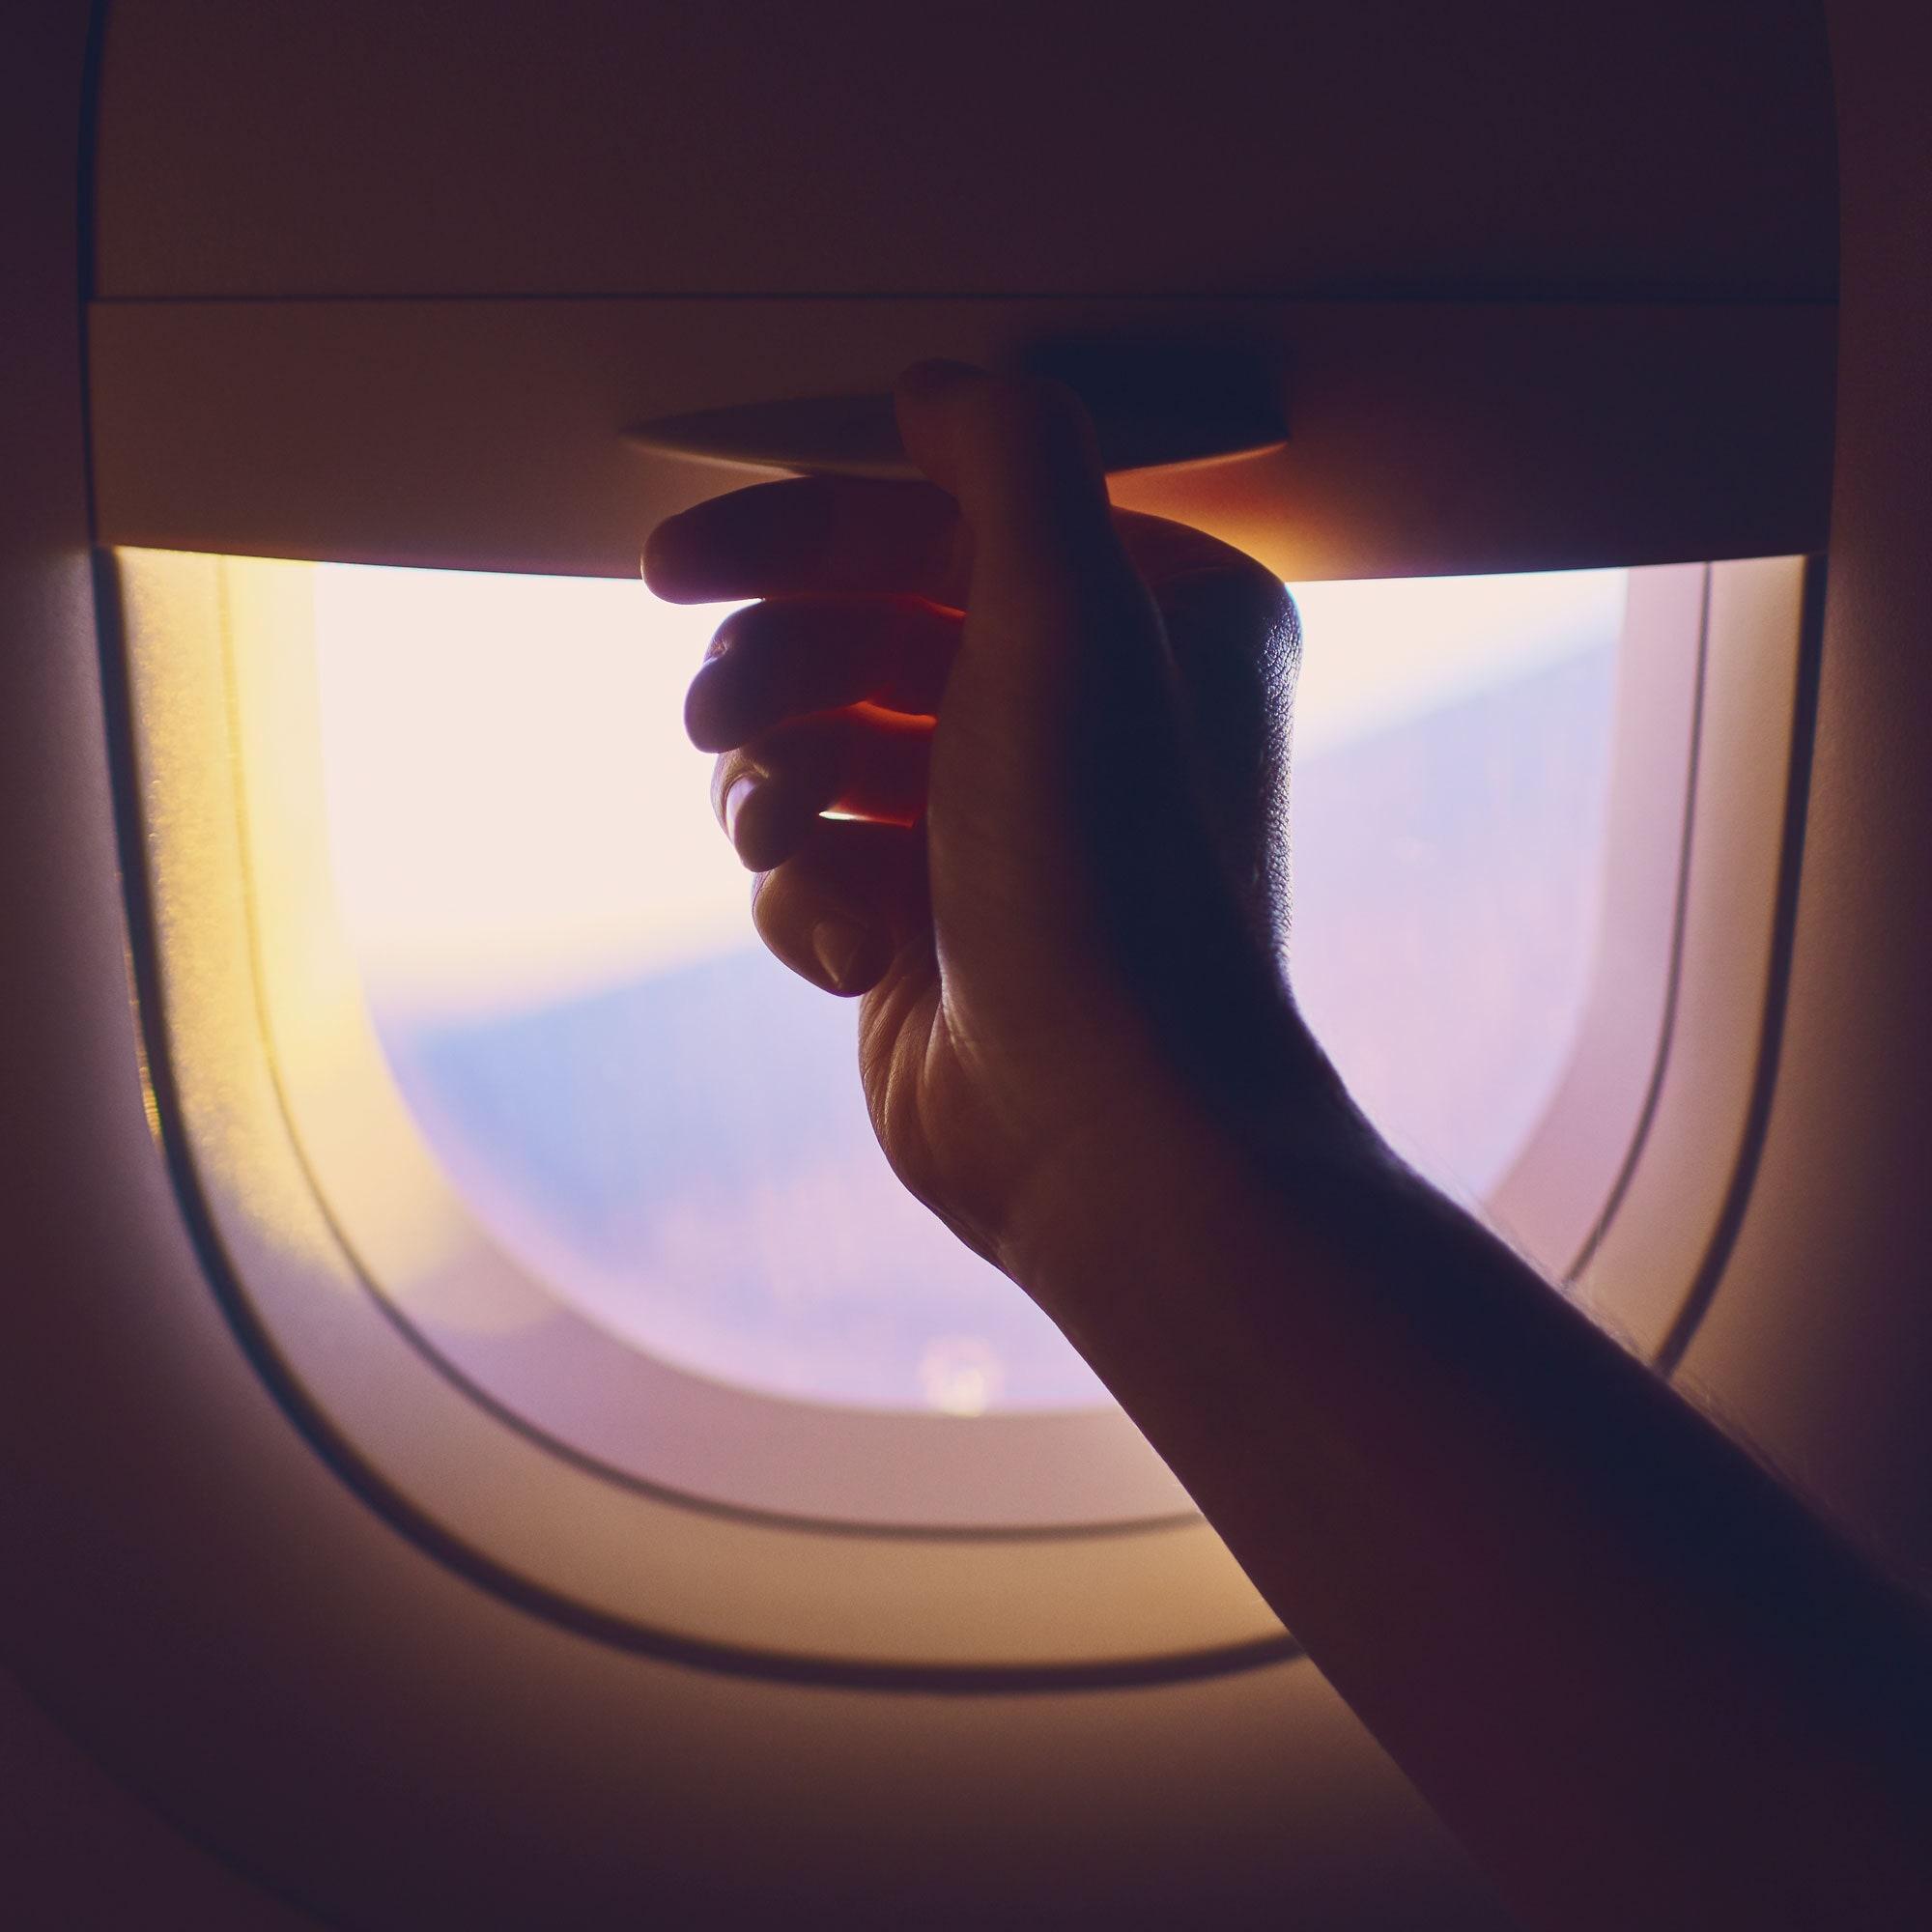 Luật mở rèm cửa sổ khi máy bay hạ cánh quan trọng hơn bạn nghĩ - 1